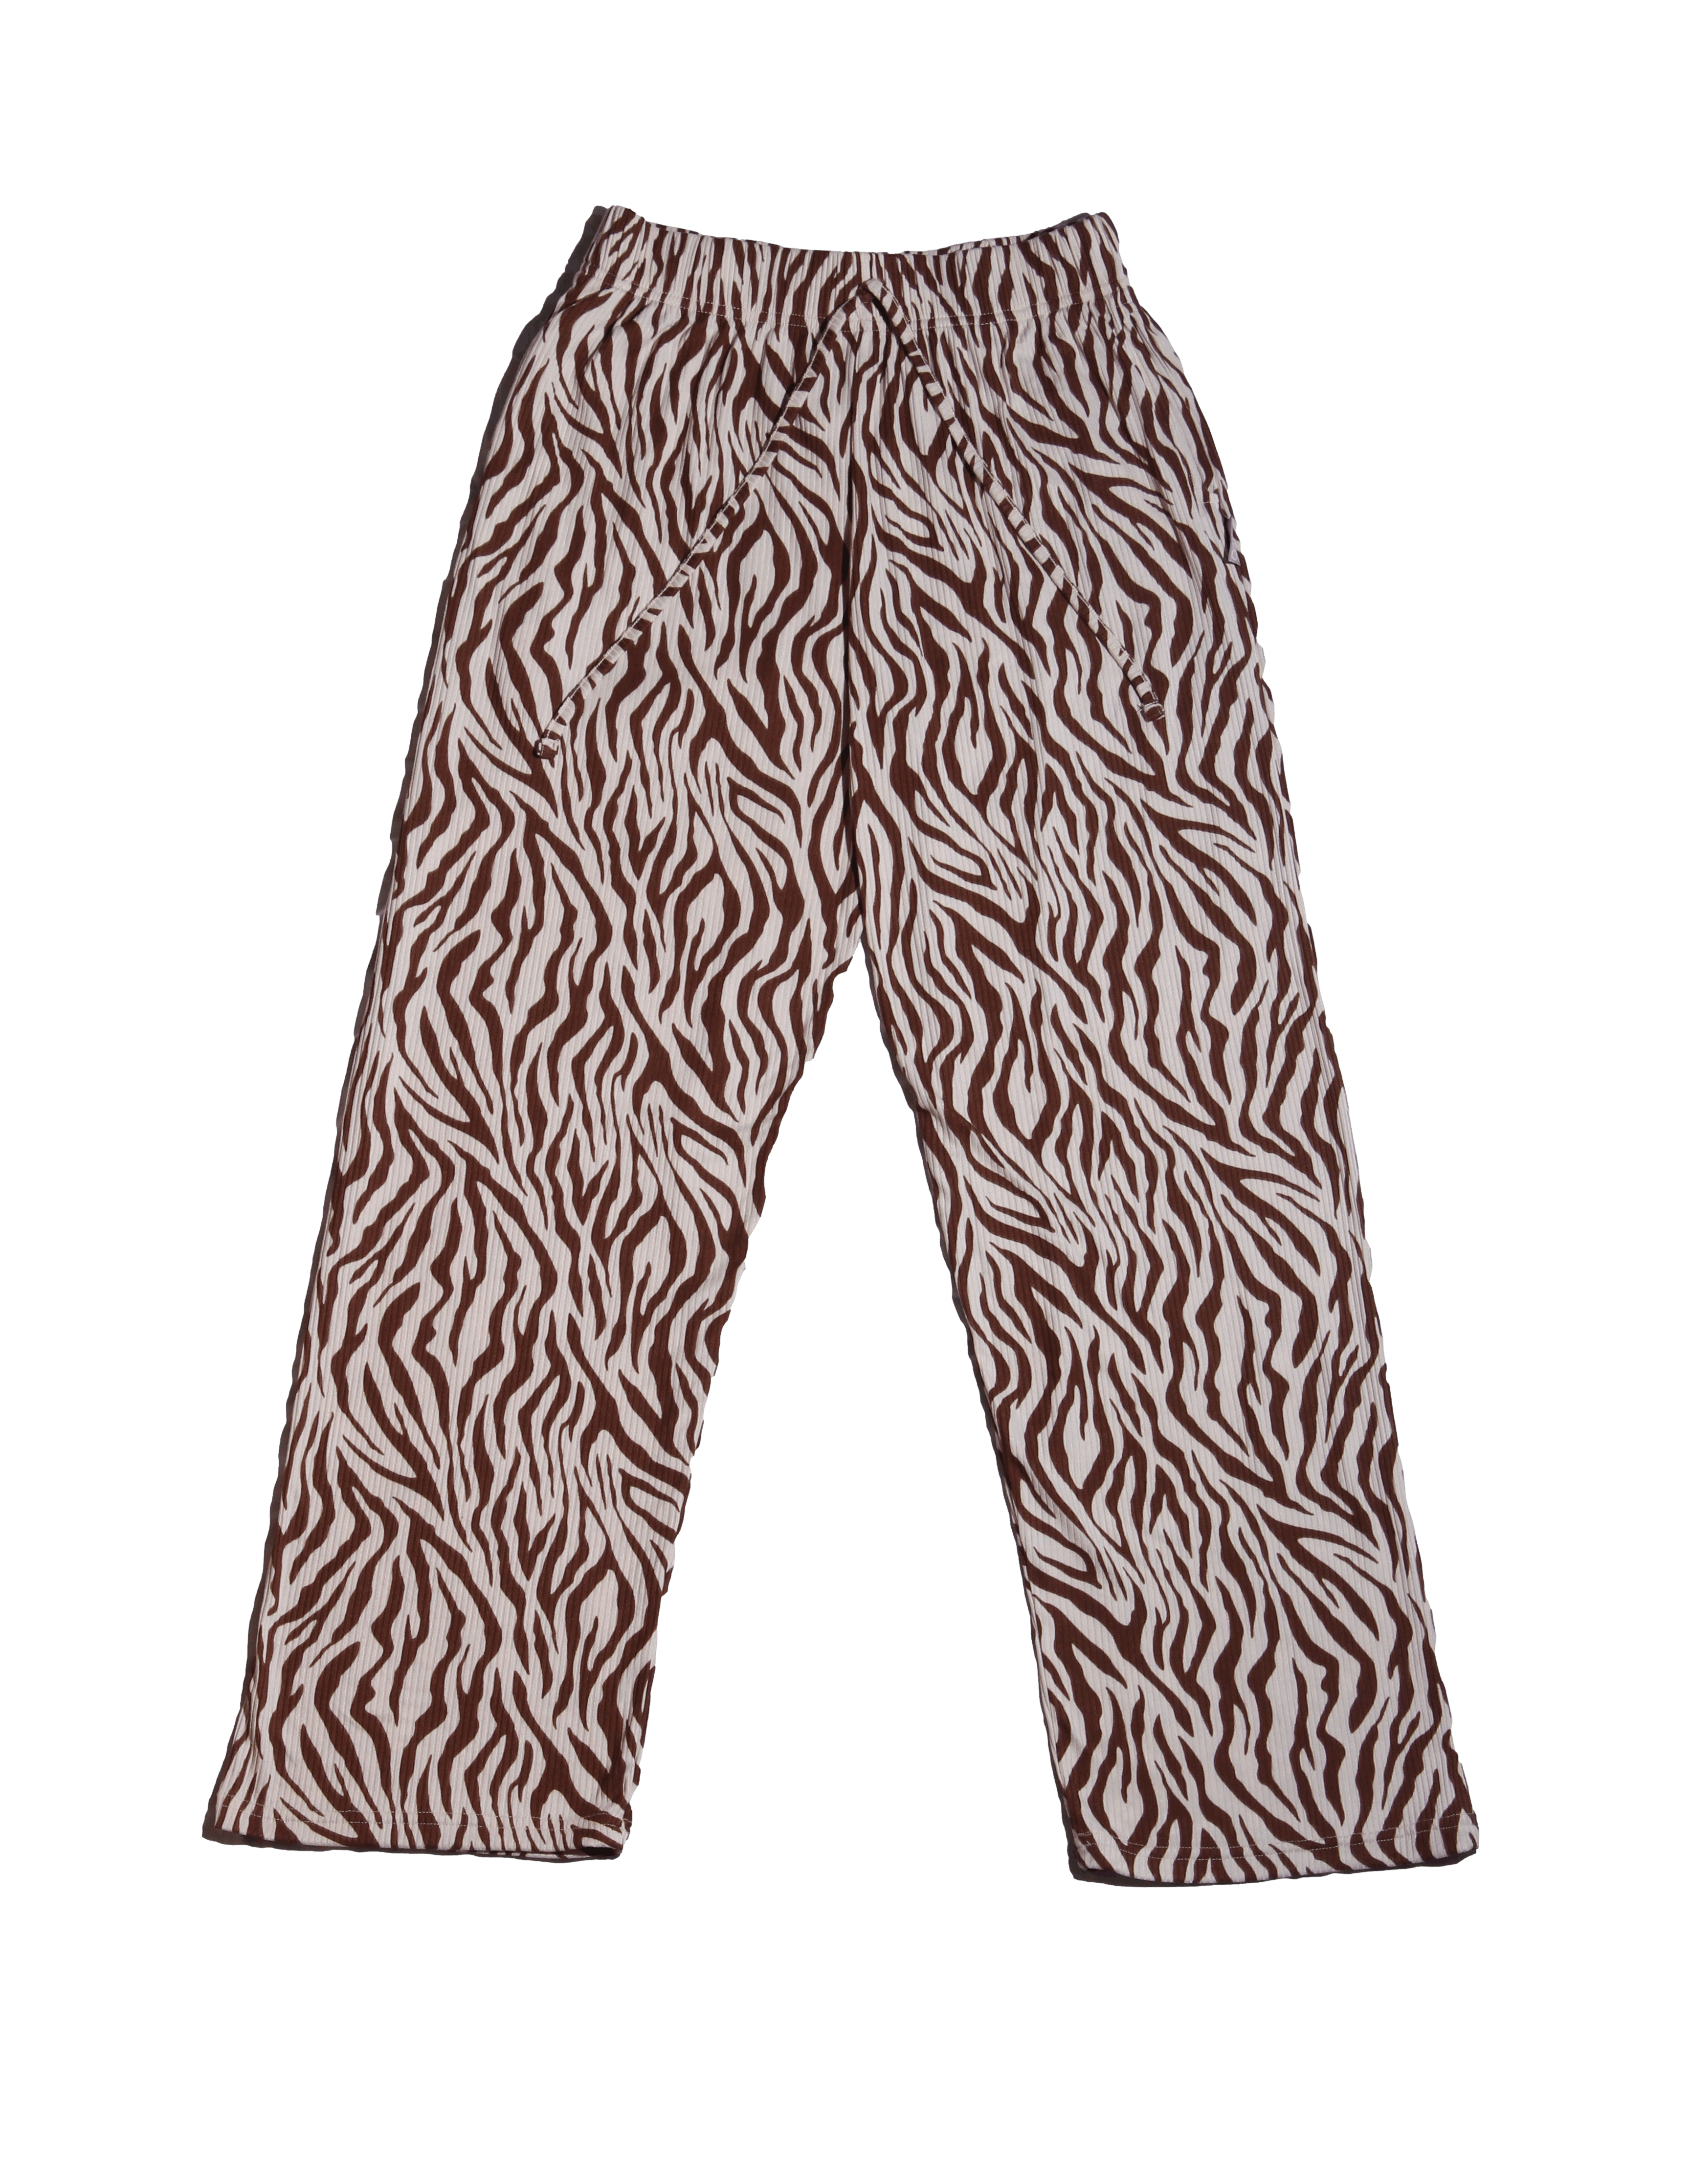 Pantalón Aero 1987 palazzo beige con estampado cebra marrón, tela rib, cintura elástica y tiras ajustables Cintura 69 cm (sin estirar) Largo 103 cm